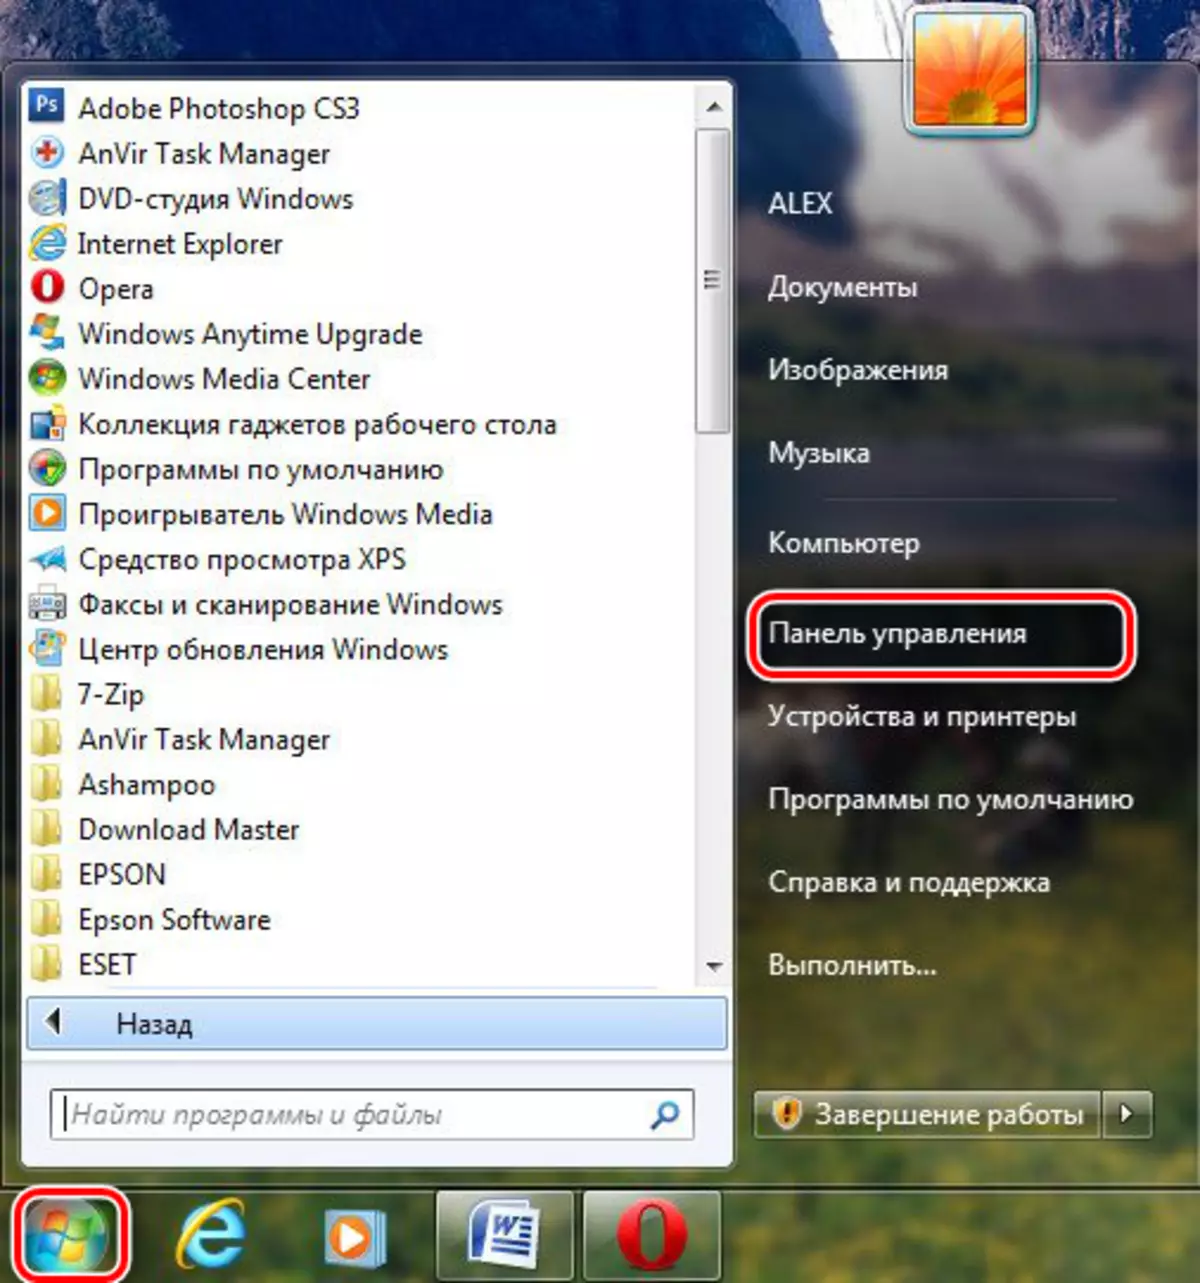 Itsinda rya Windows 7 na Hasi